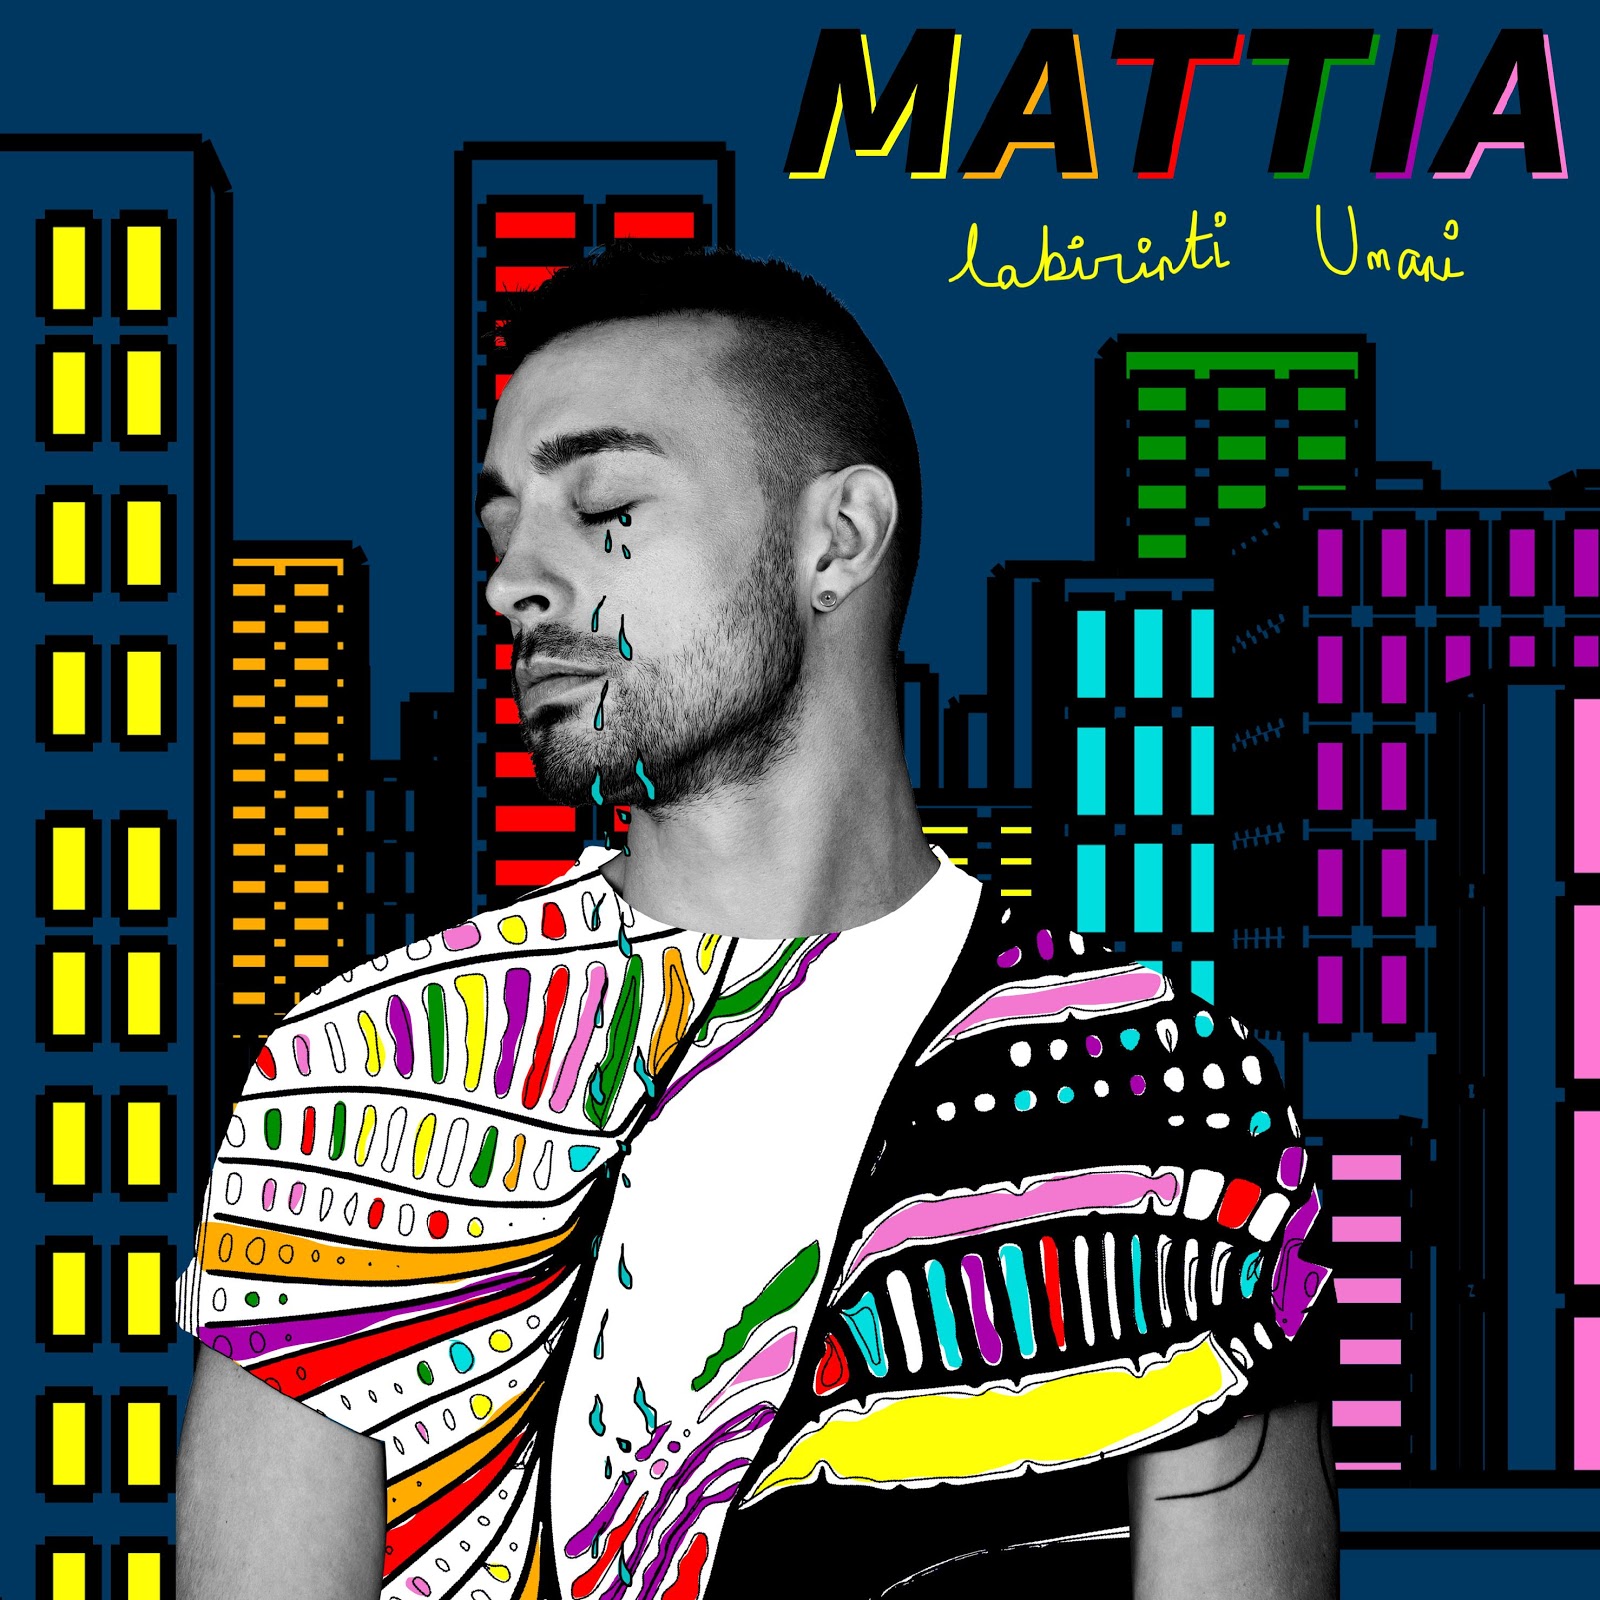 Mattia “Diana” è il terzo singolo estratto dall’album “Labirinti umani” del cantautore modenese 